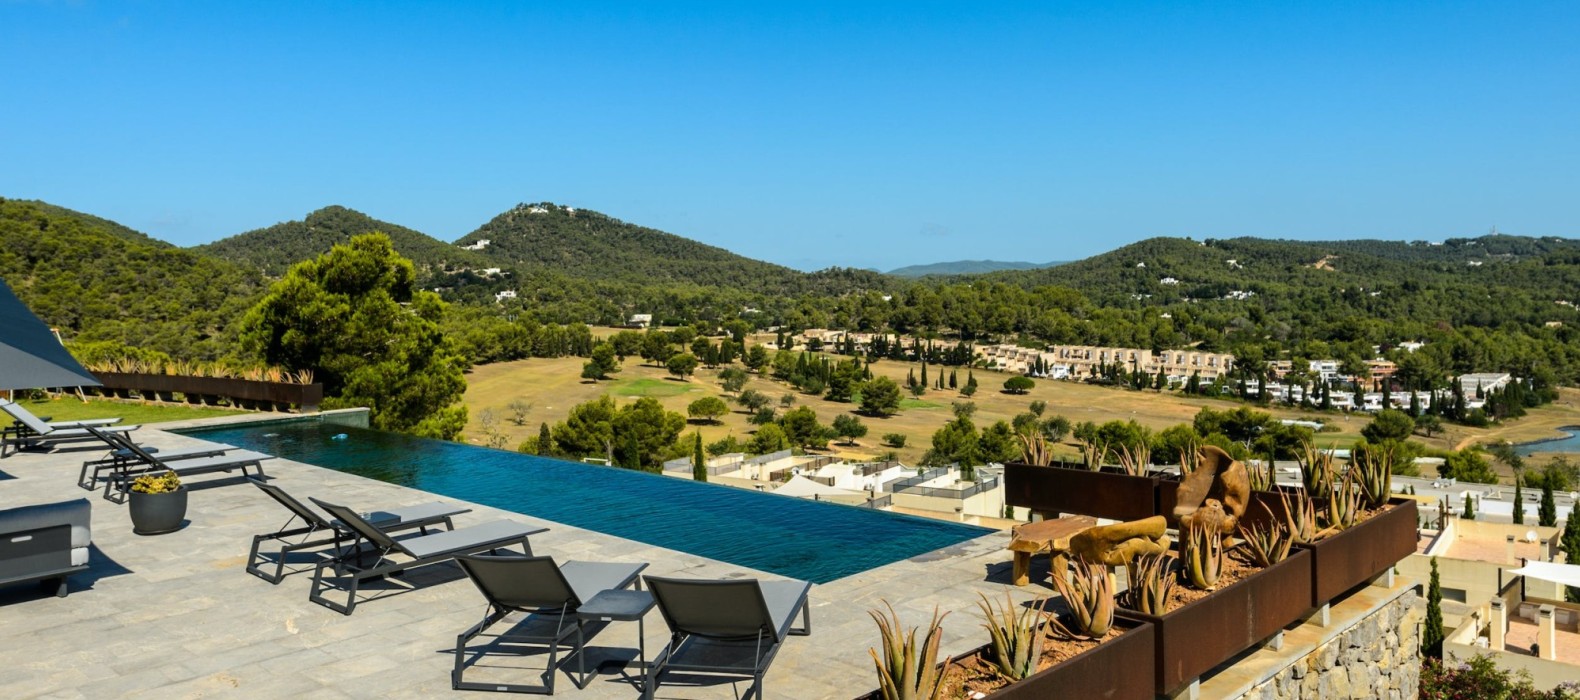 Exterior pool area of Villa Roca Indigo in Ibiza